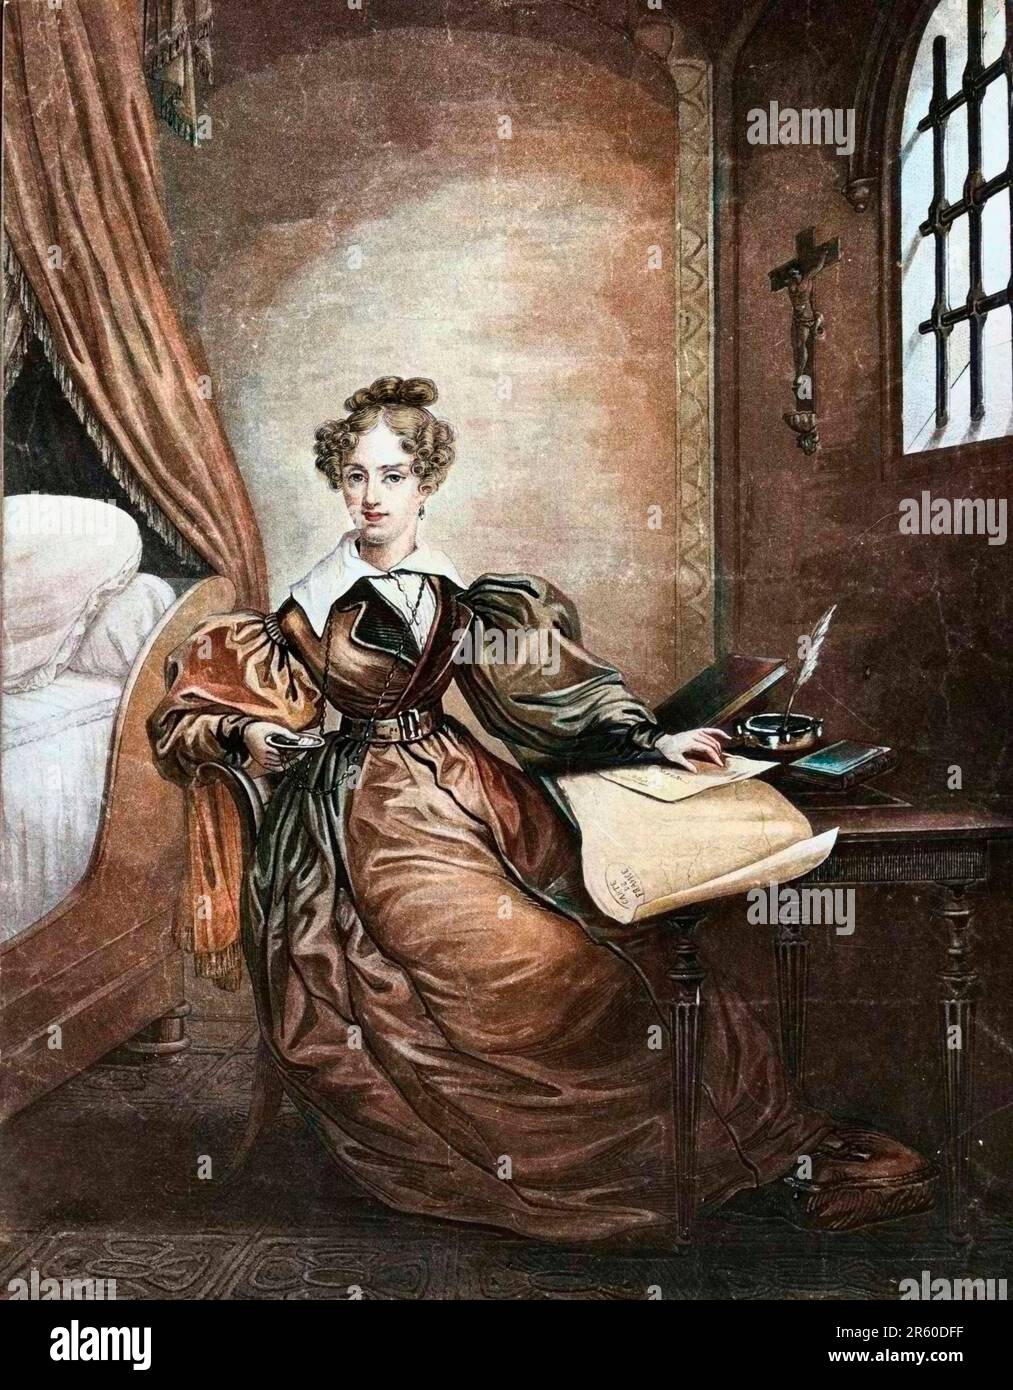 La Duchesse de Berry (Marie Caroline de Bourbon Siciles, 1798-1870) emprigionnee dans la citadelle de Blaye - Duchesse de Berry imprigionato nel castello di Blay - Foto Stock